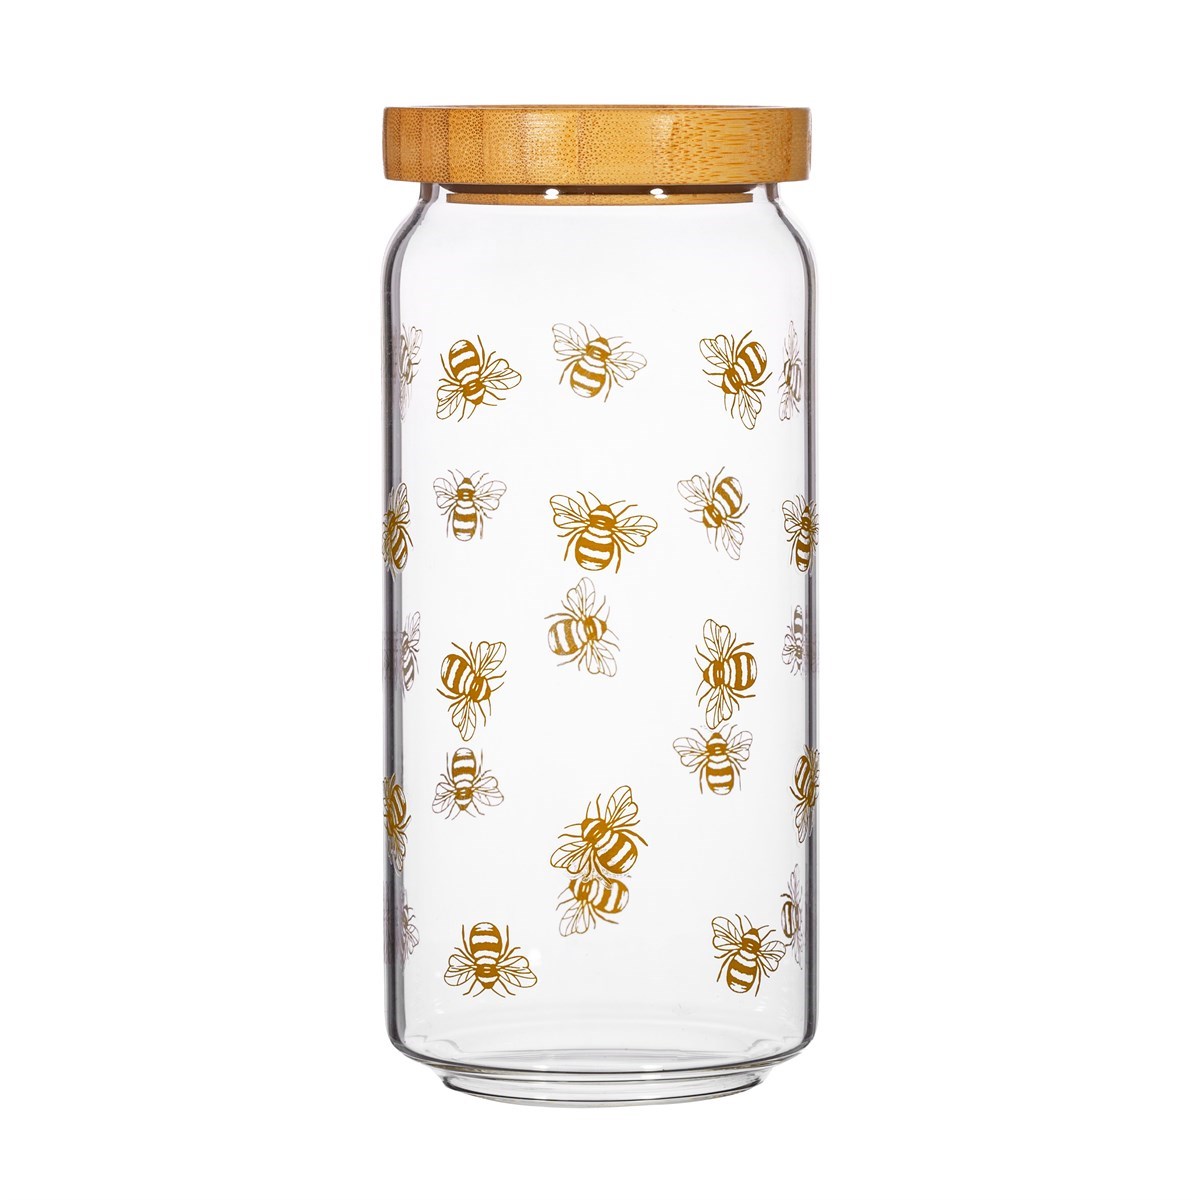 Vintage Bee Glass Storage Jar - Large